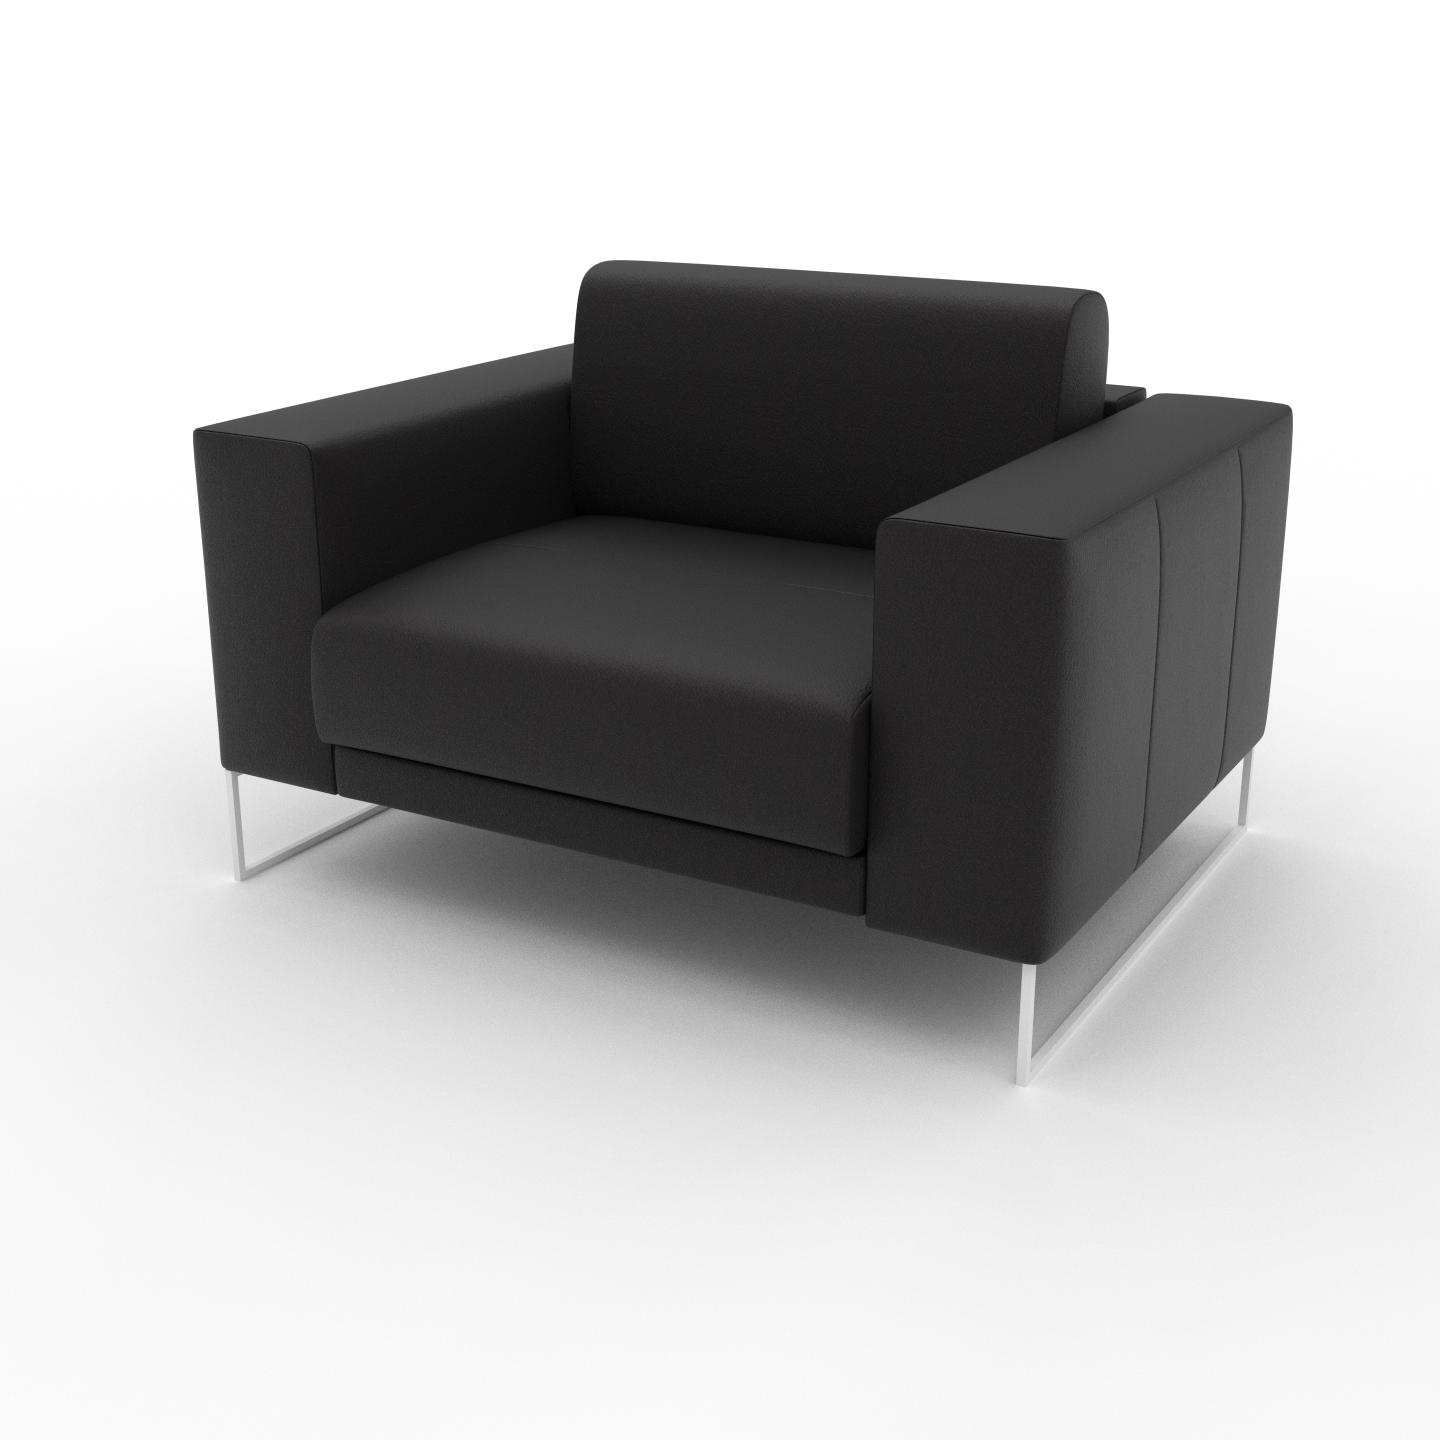 MYCS Sessel Schwarz - Eleganter Sessel: Hochwertige Qualität, einzigartiges Design - 128 x 81 x 98 cm, Individuell konfigurierbar